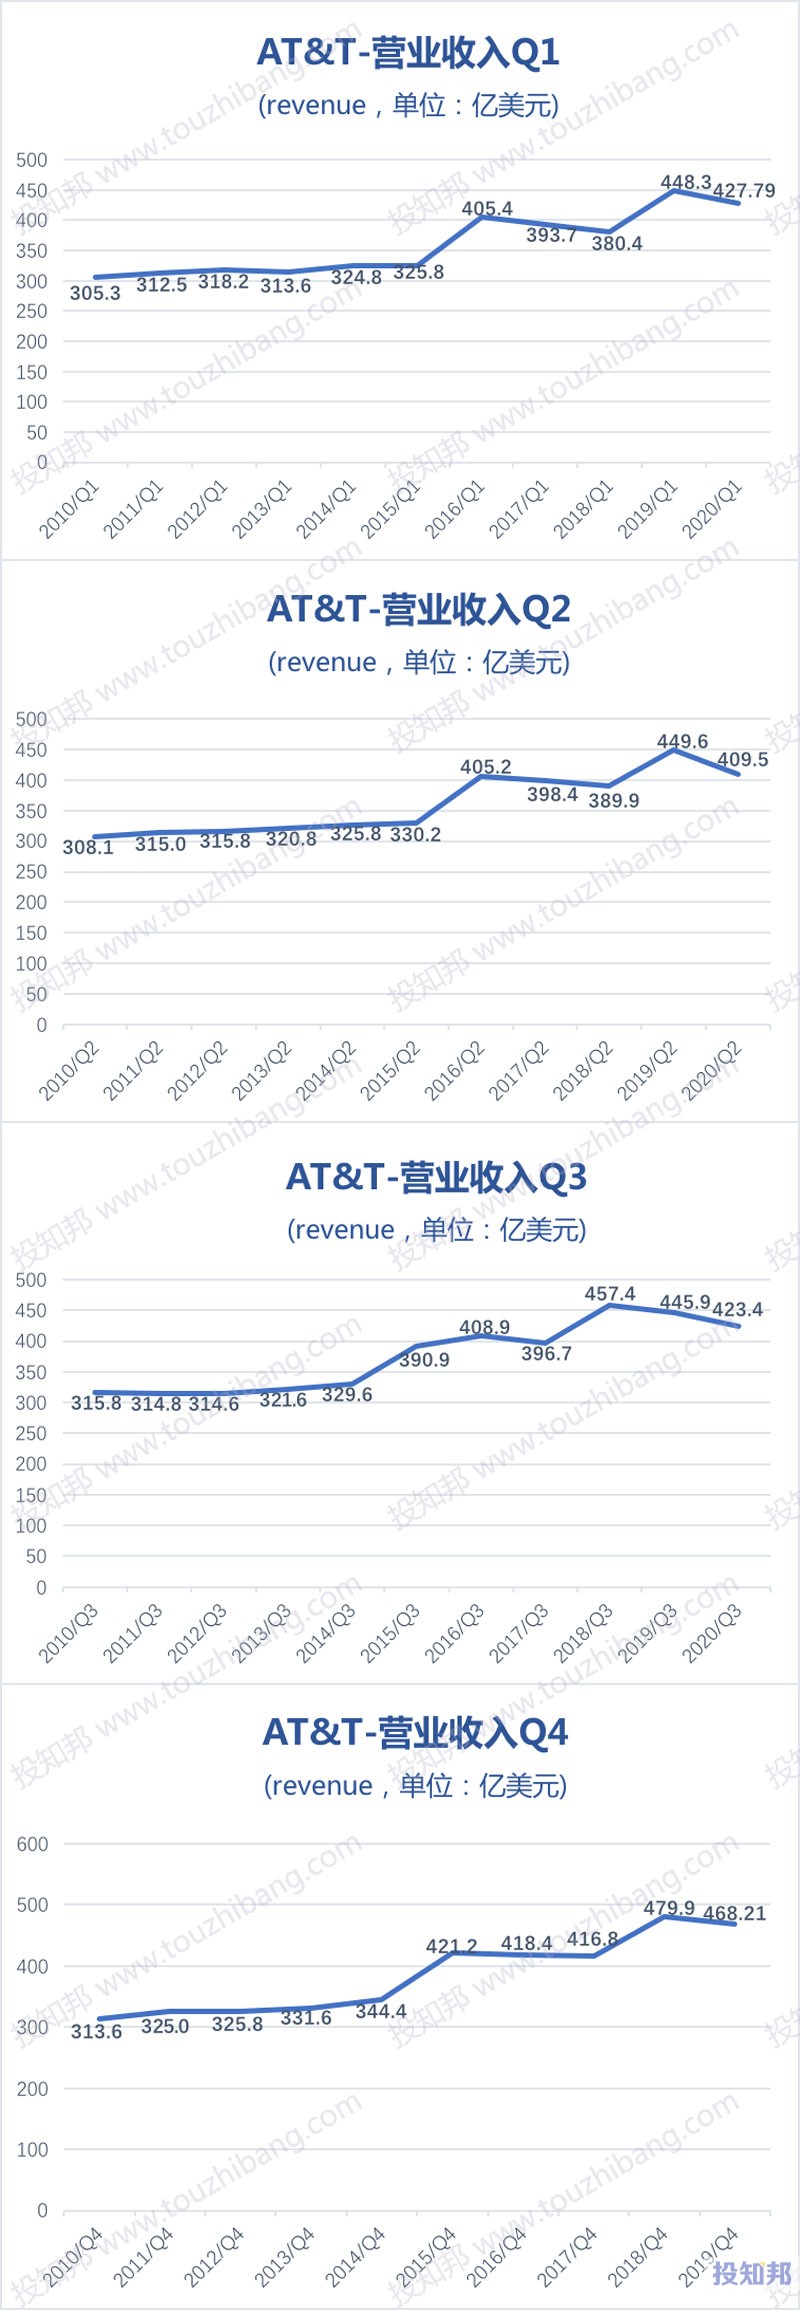 图解美国电话电报公司AT&T(T)财报数据(2010~2020年Q3，更新)